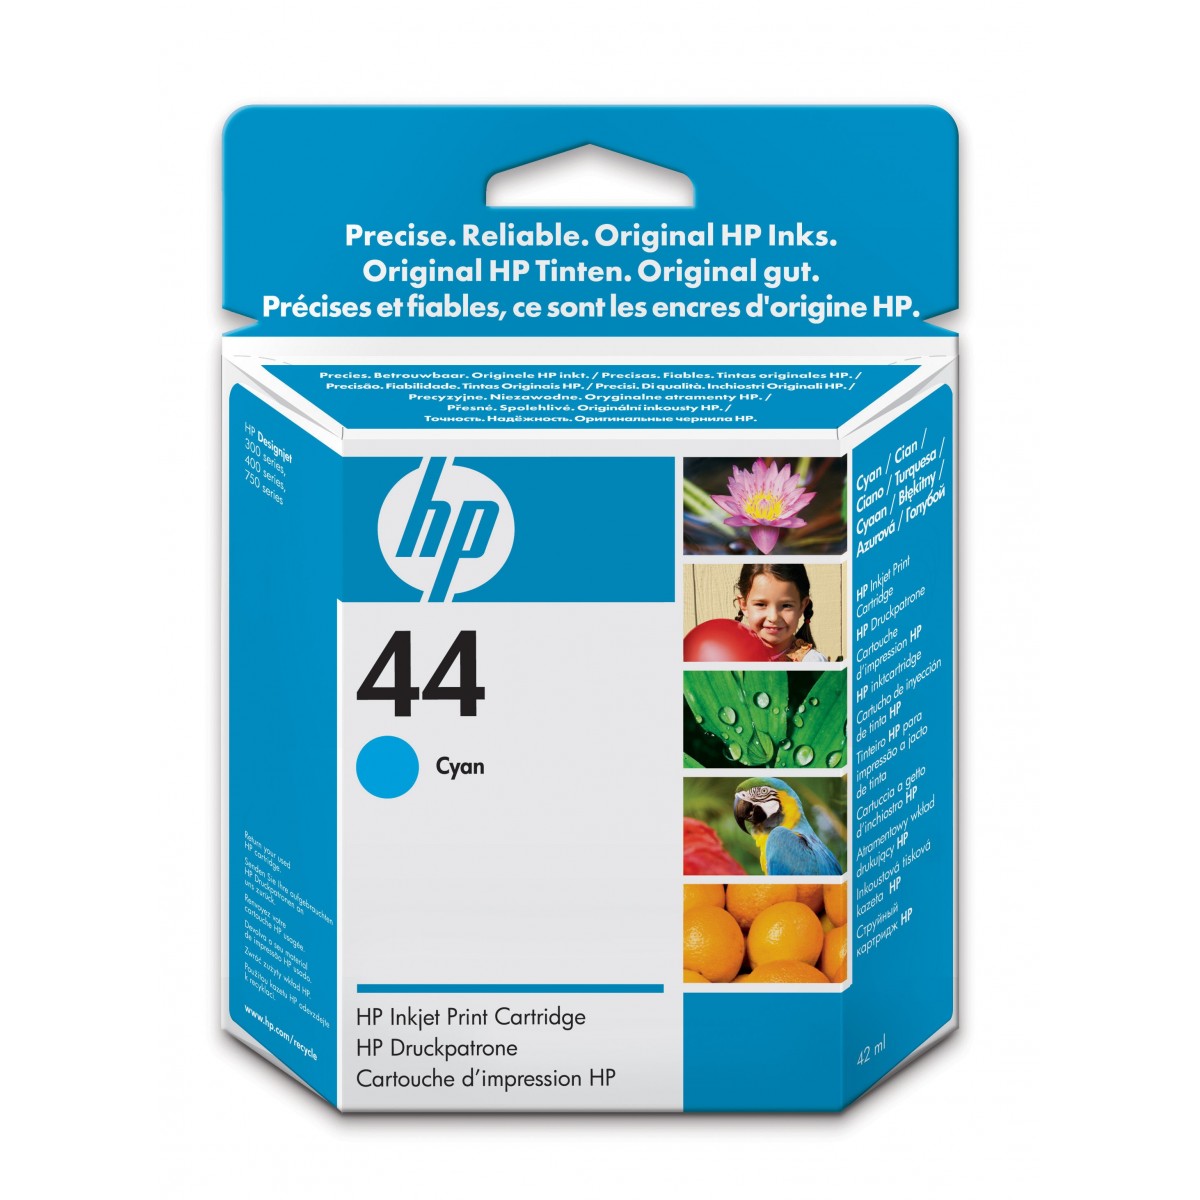 HP 44 - Original - Cyan - HP Designjet 350 - 450 - 455 - 488 - 750 - 755 - 1 pc(s) - Inkjet printing - 150 g